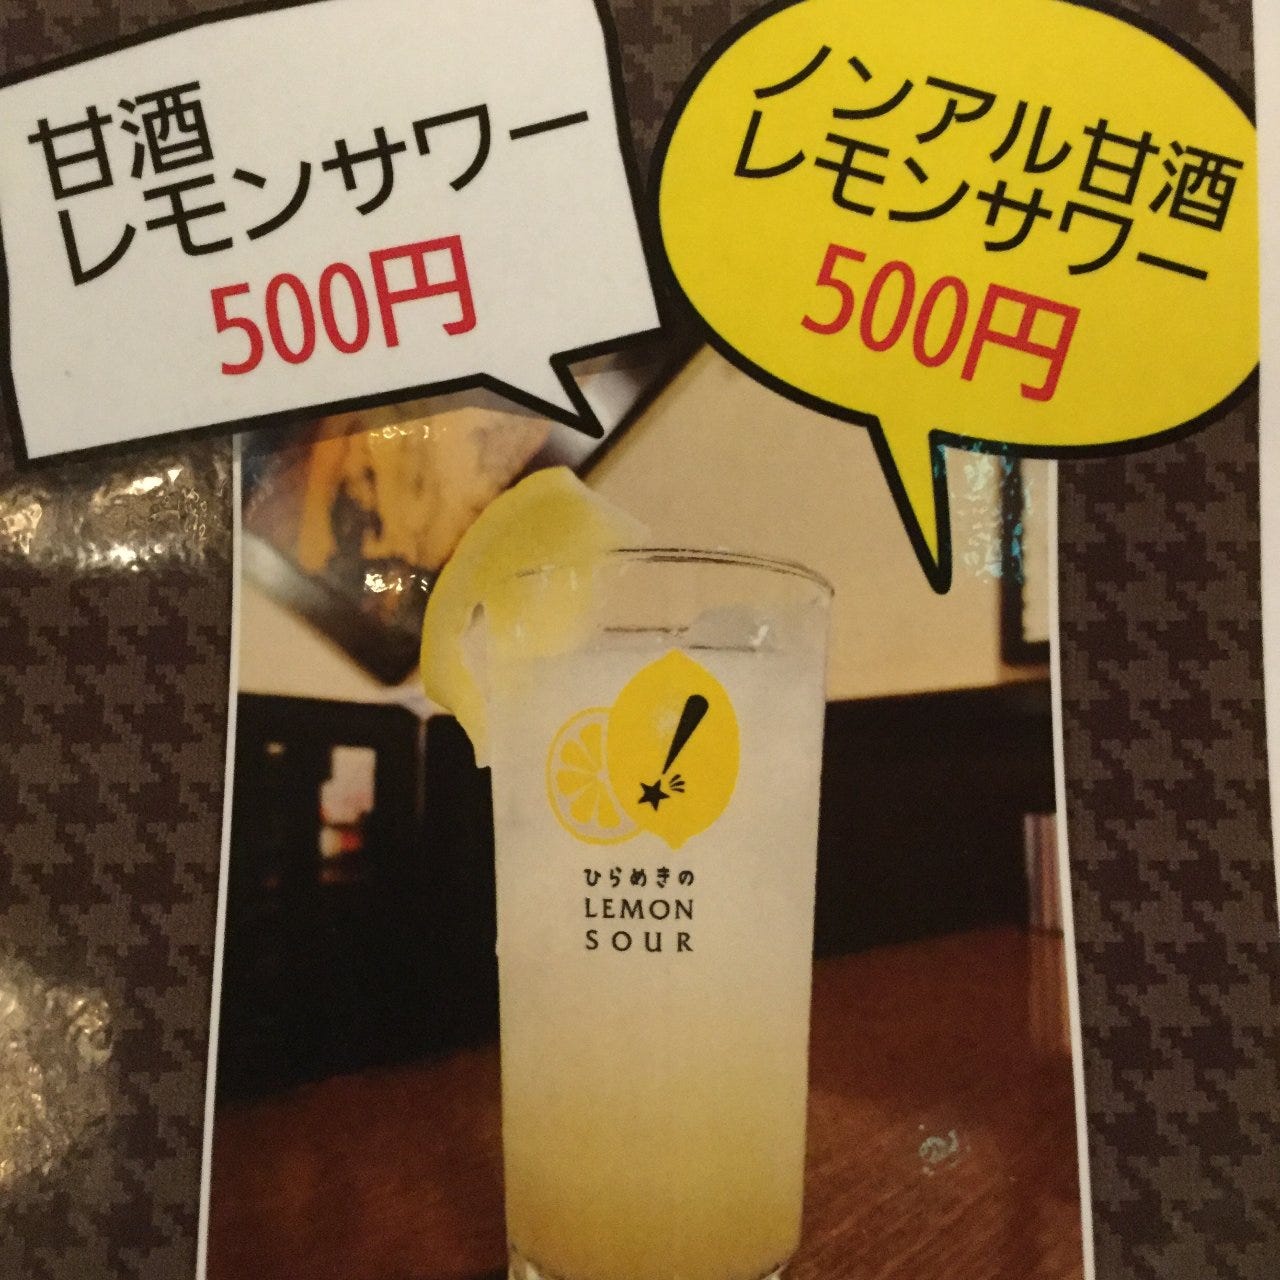 レモン様グランプリで人気の甘酒レモンサワー
500円